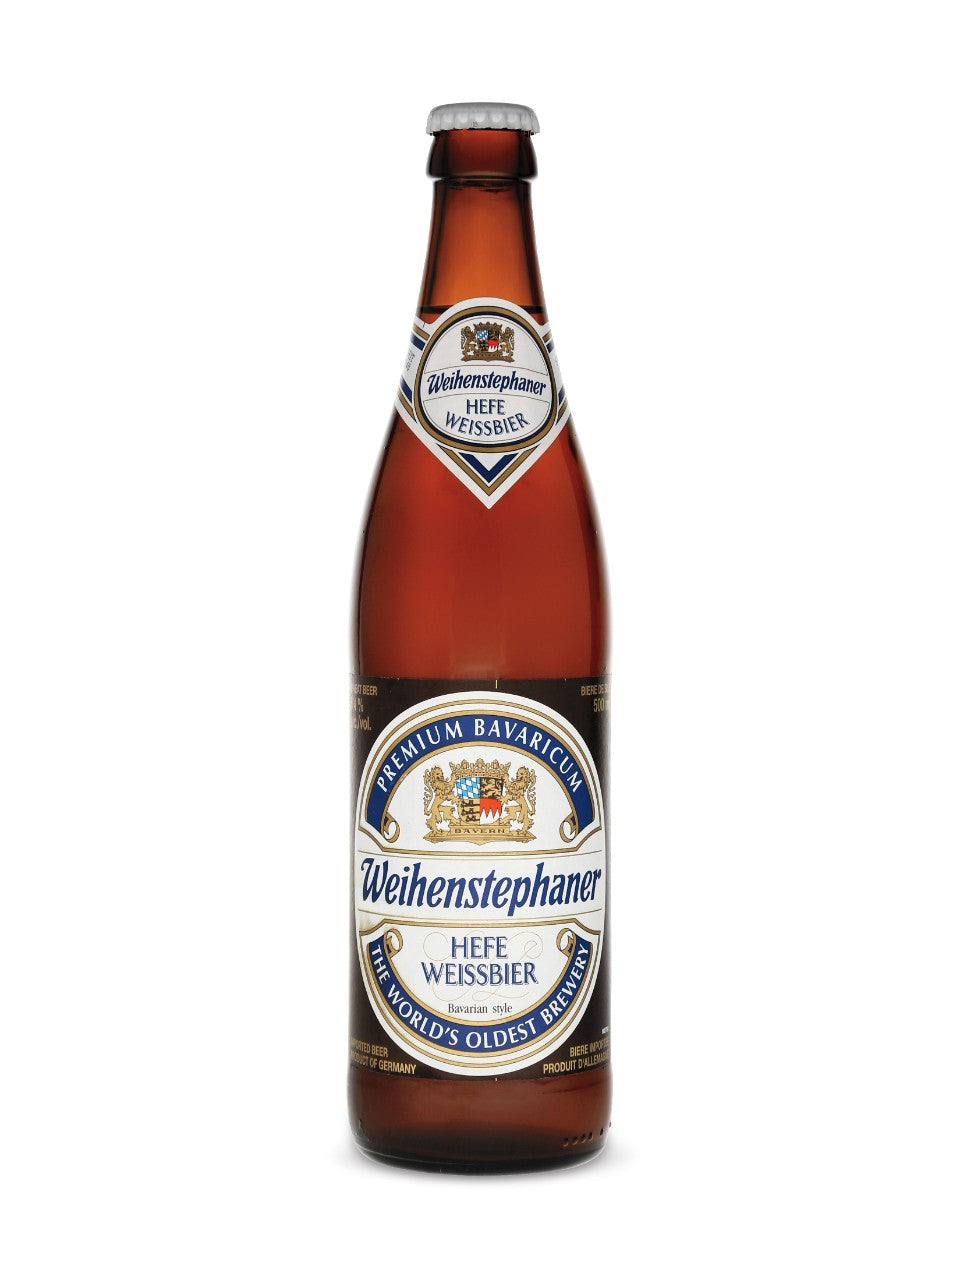 Weihenstephaner Hefeweissbier 500 mL bottle